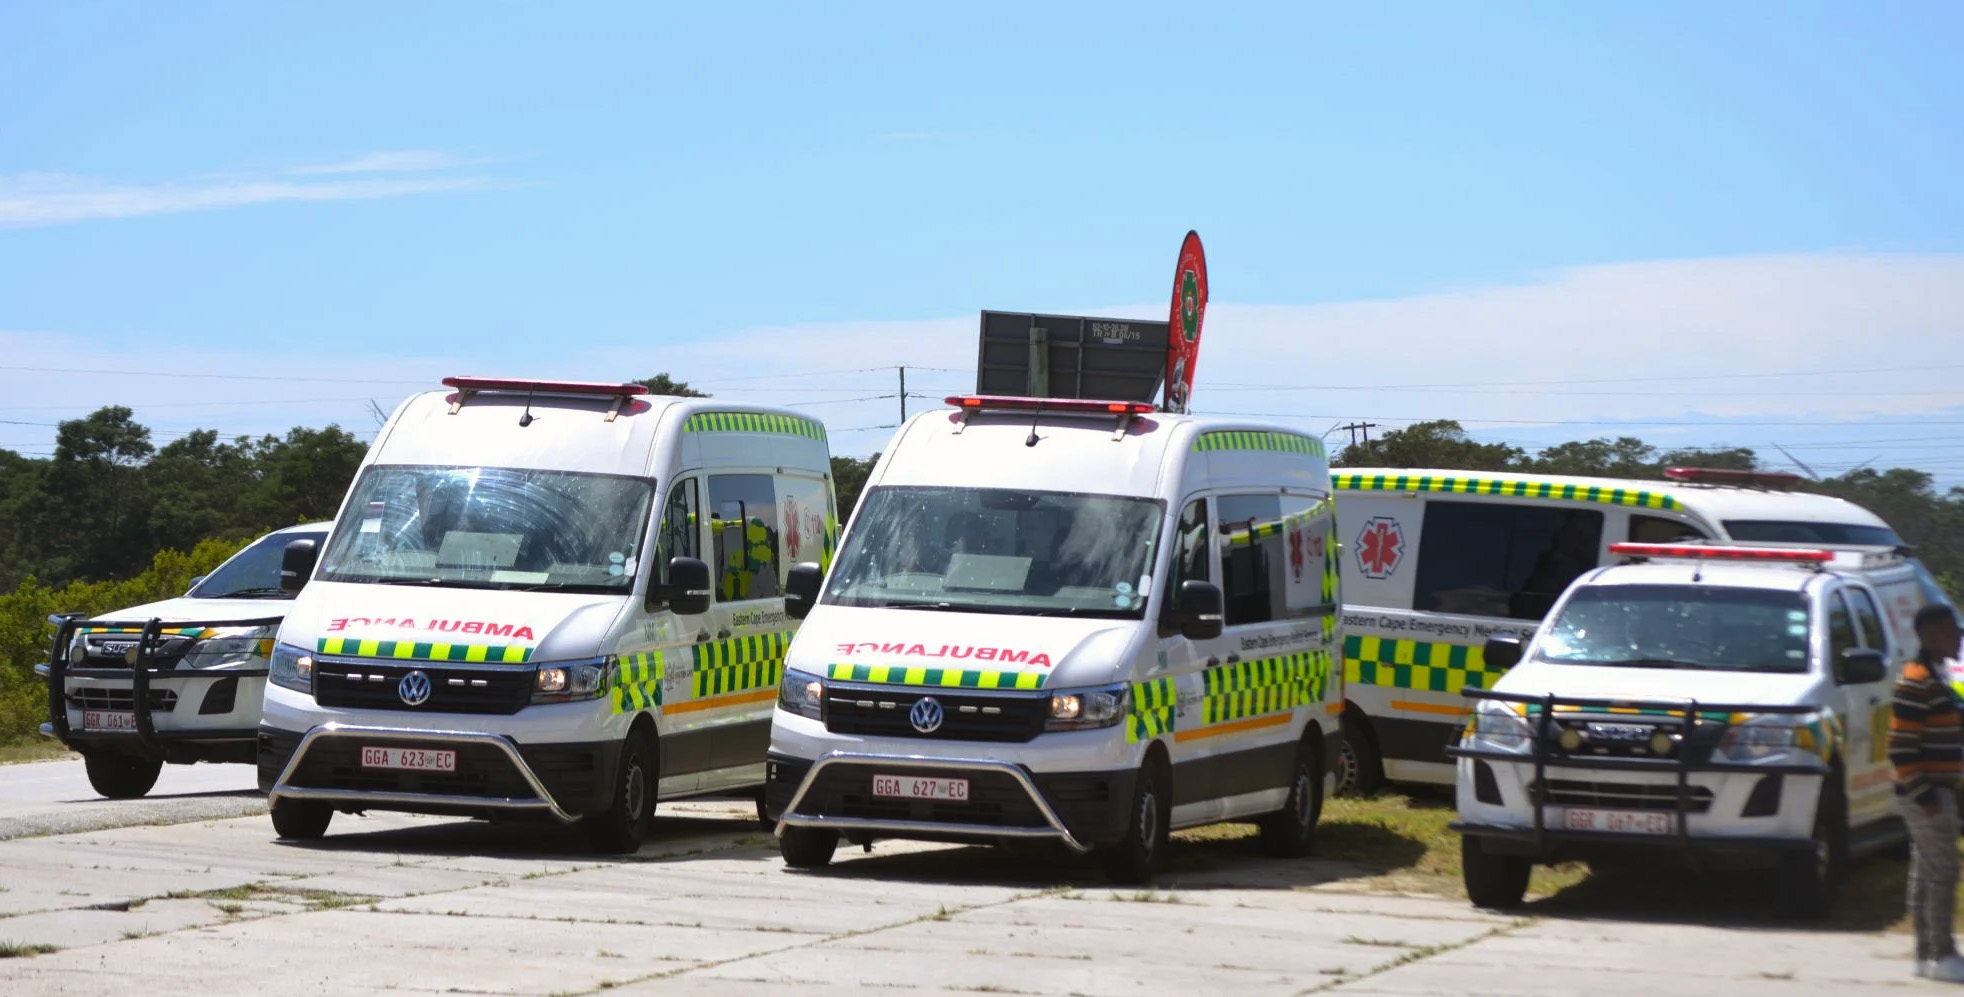 E Cape ambulance